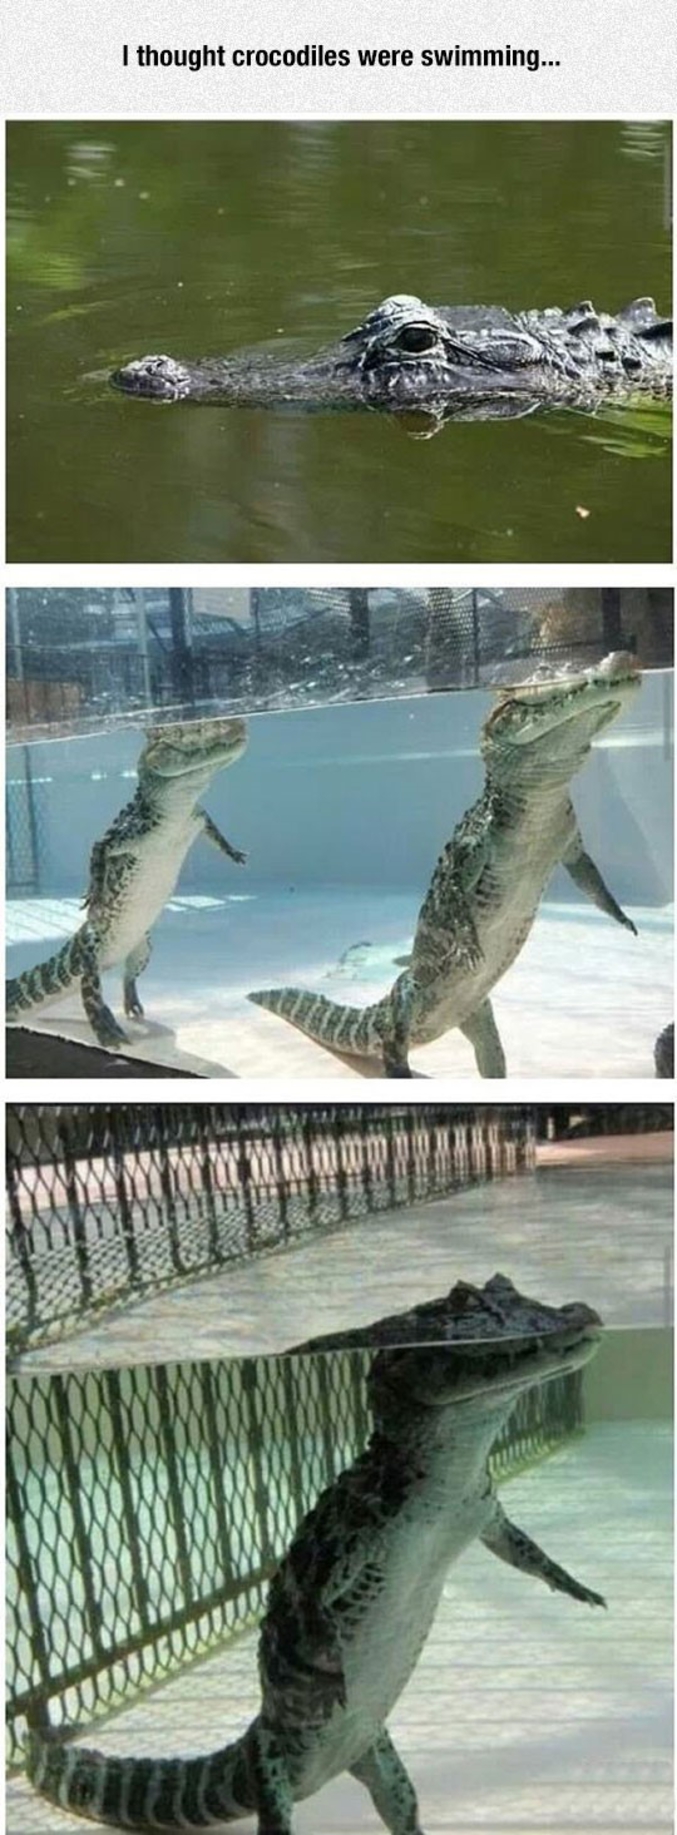 Trad : Je pensais que les crocodiles nageaient...